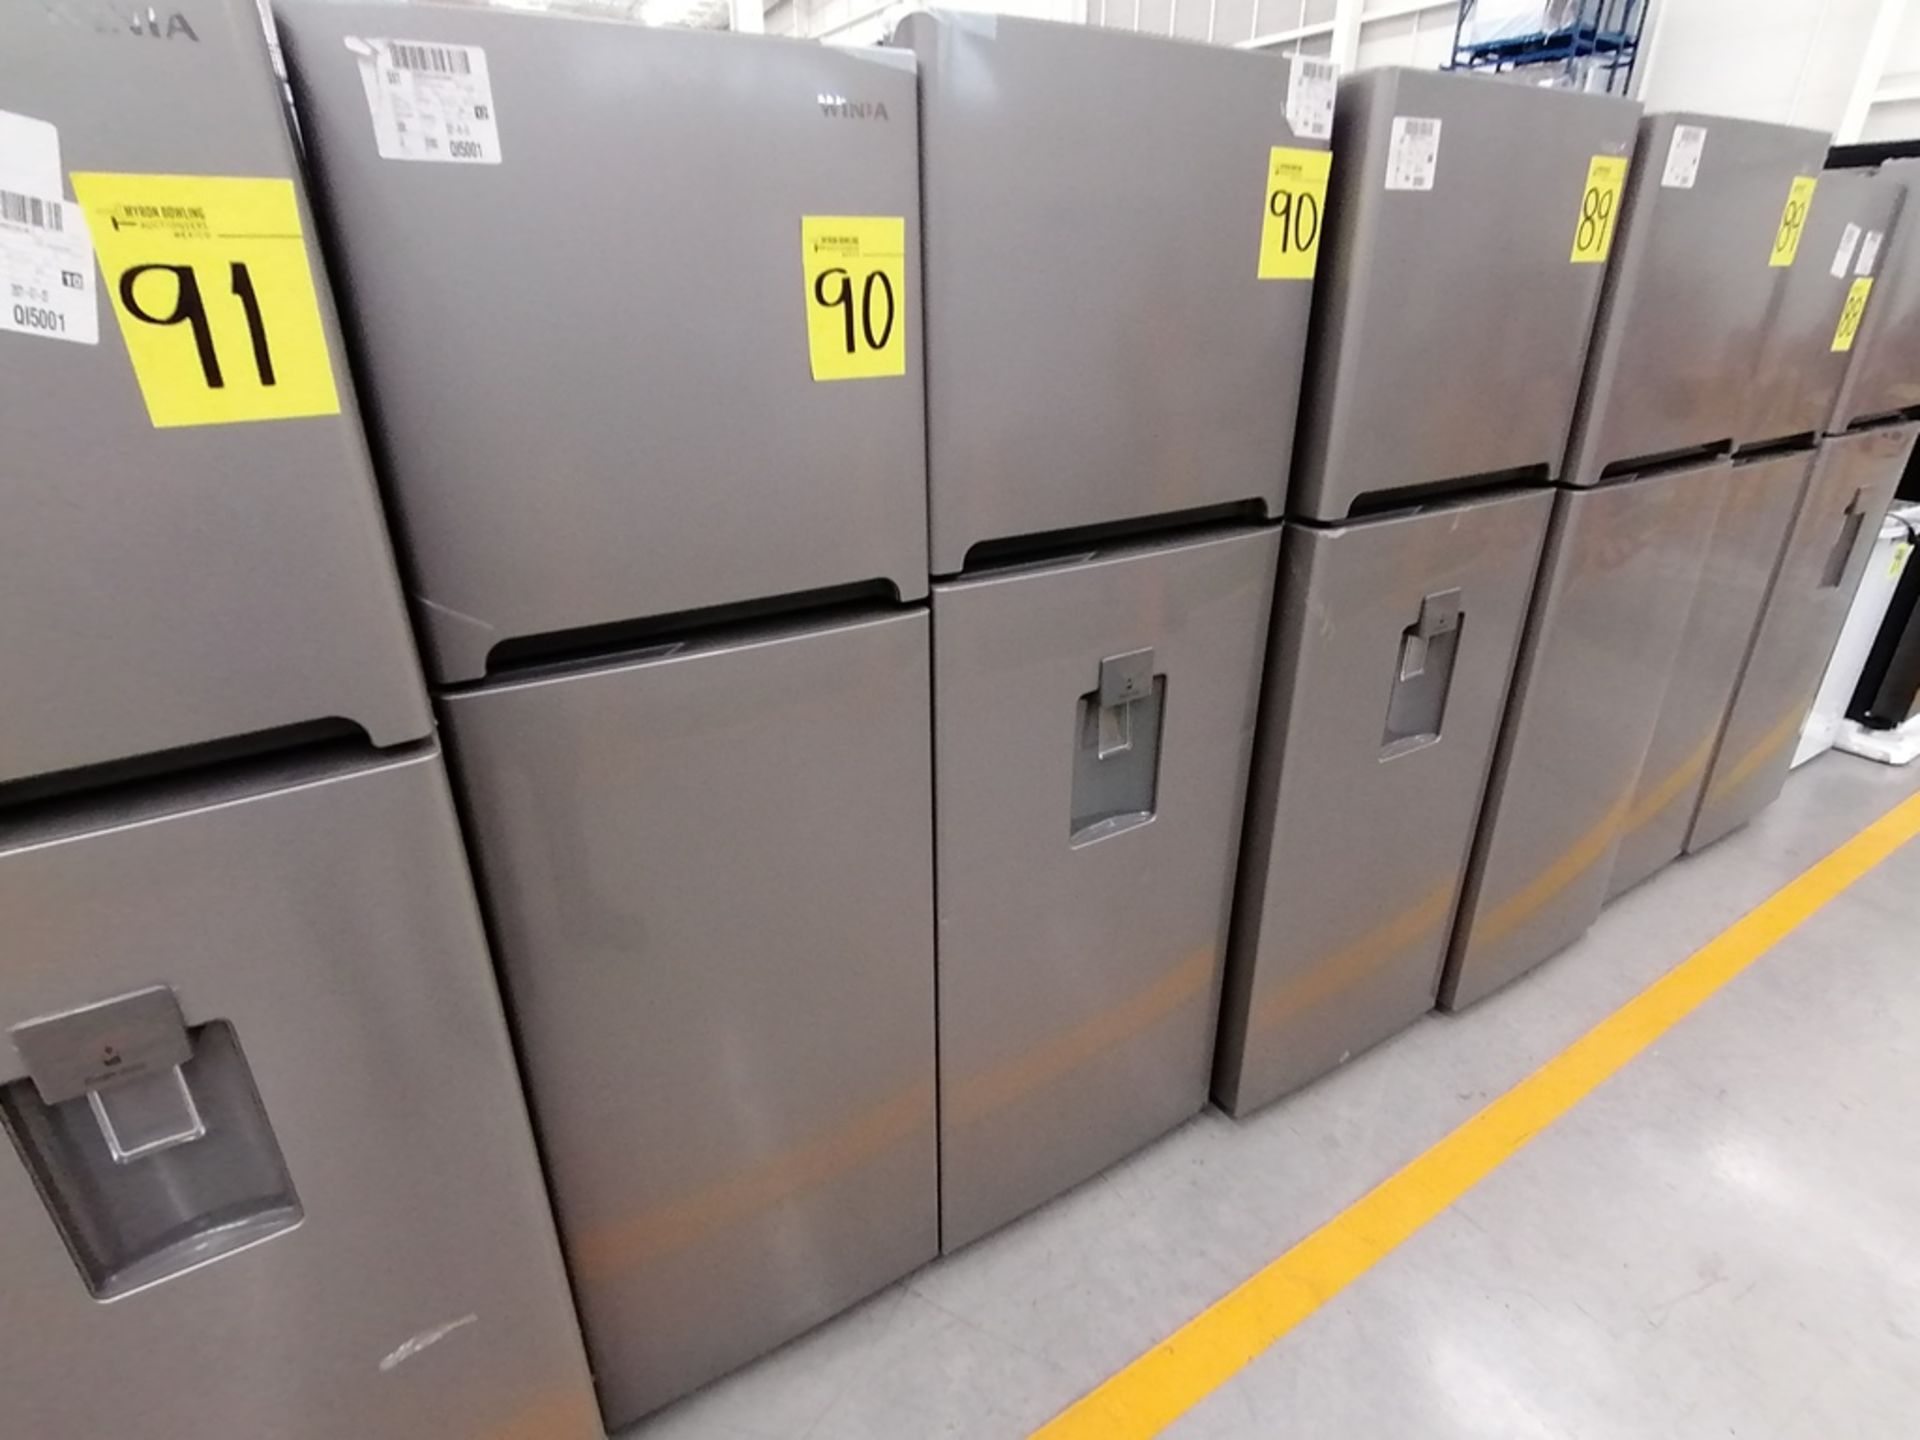 Lote de 2 Refrigeradores incluye: 1 Refrigerador, Marca Winia, Modelo DFR25120GN, Serie MR219N11624 - Image 2 of 15